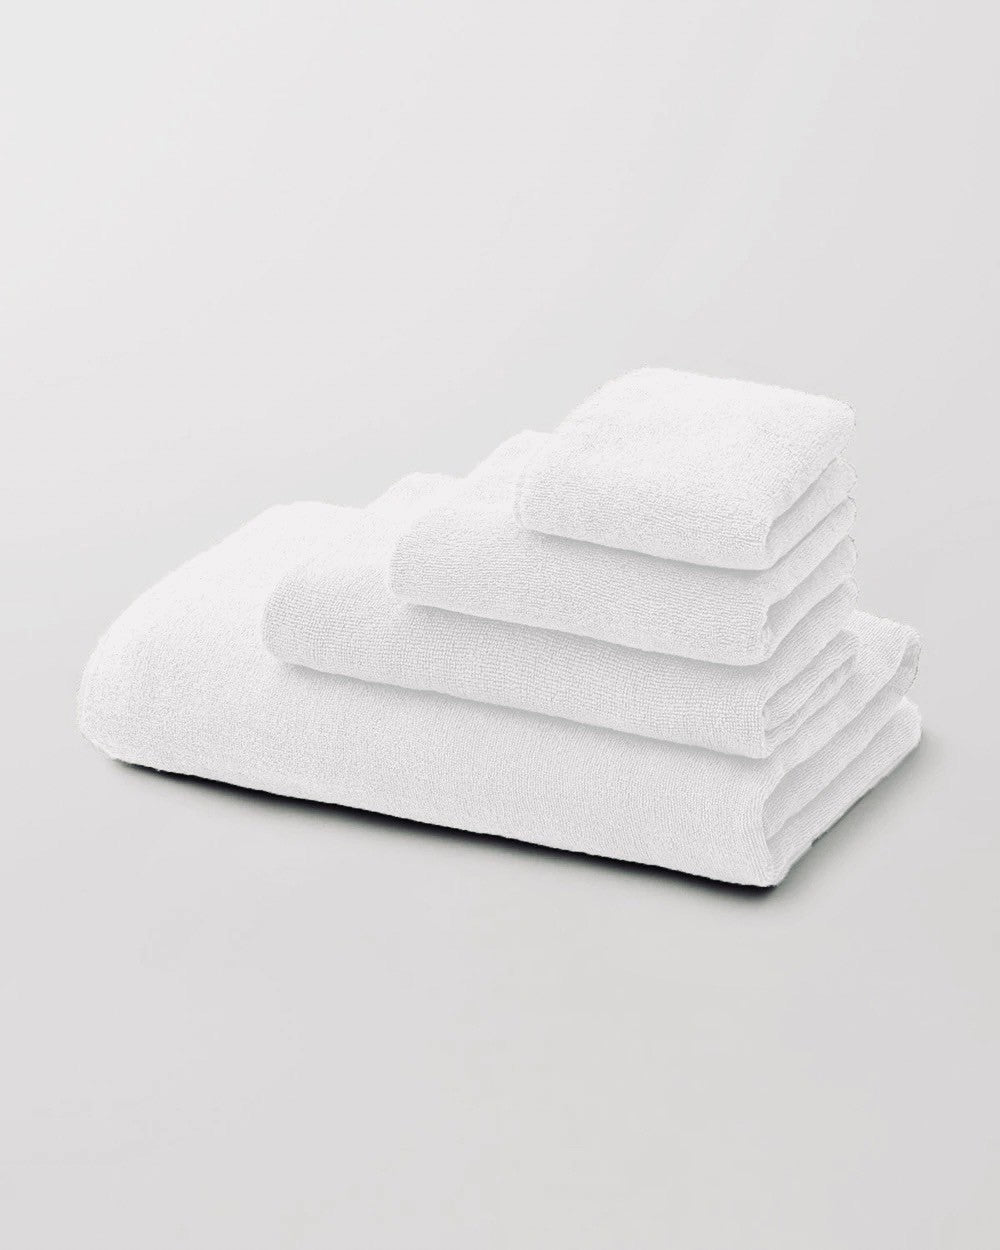 Raw Linen Bathmat